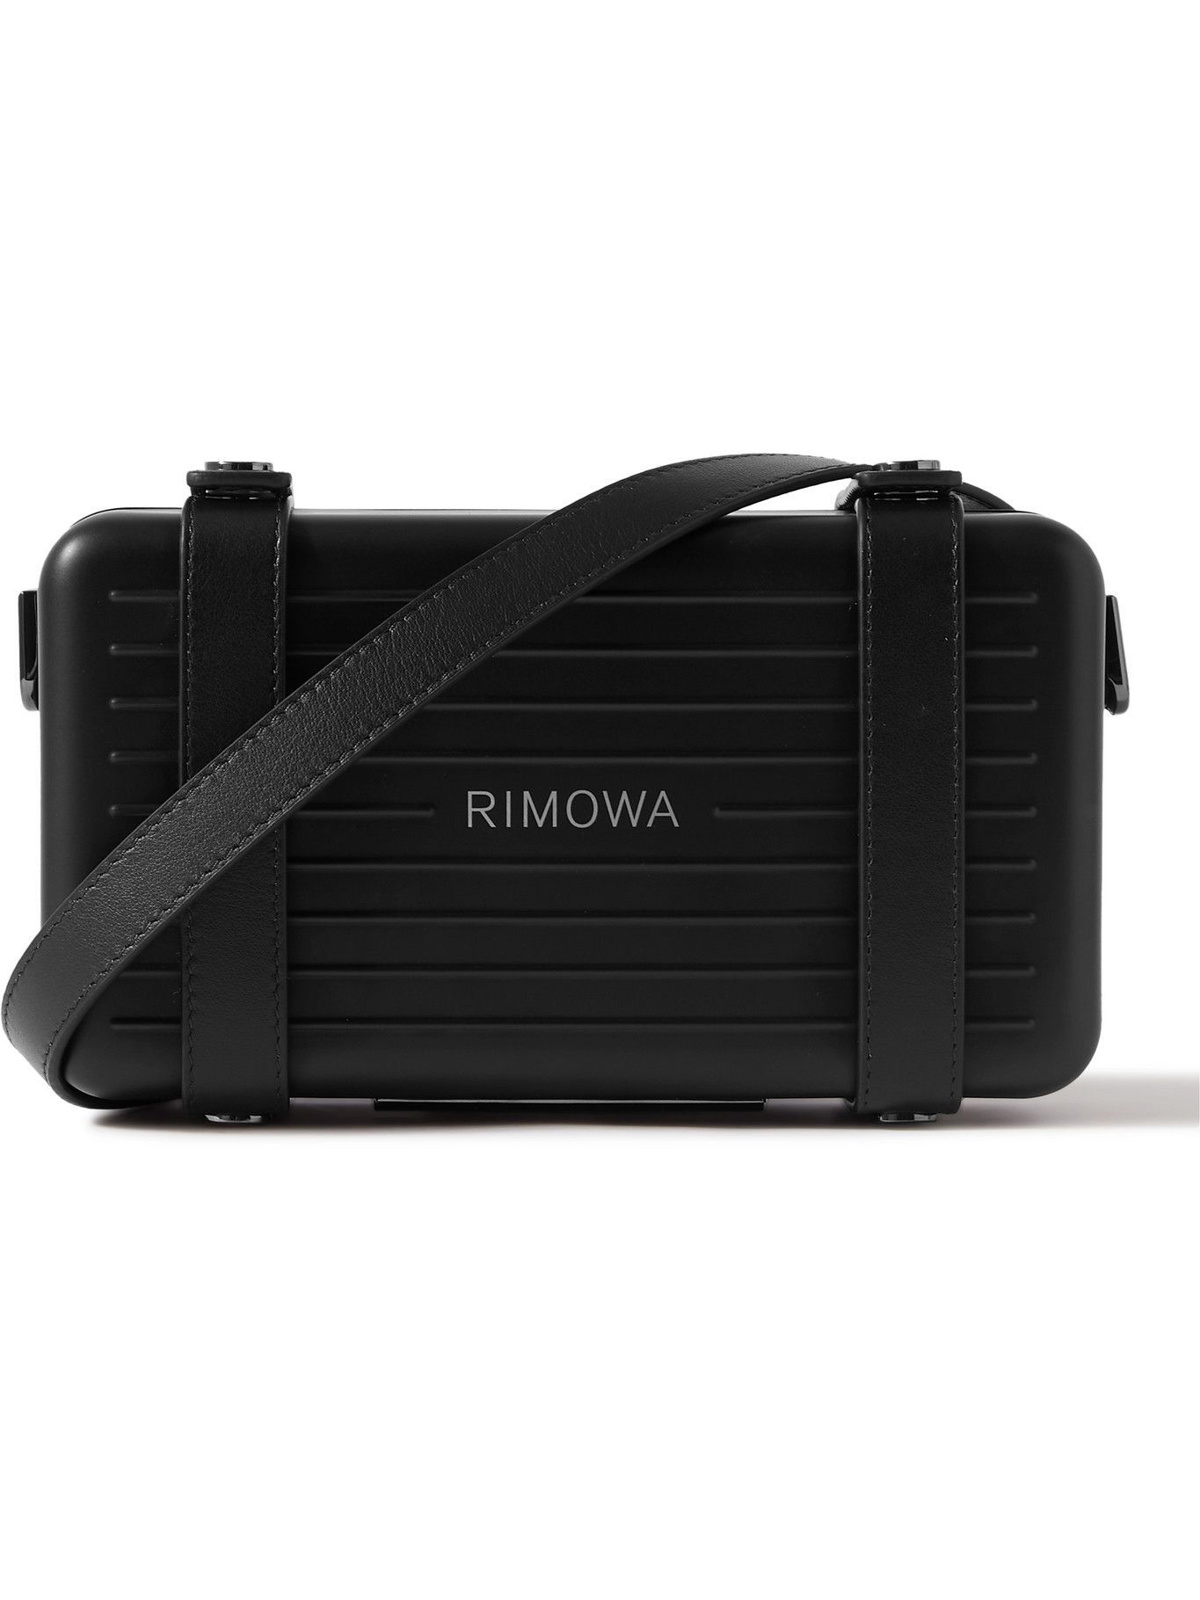 RIMOWA - Leather-Trimmed Aluminium Camera Bag RIMOWA